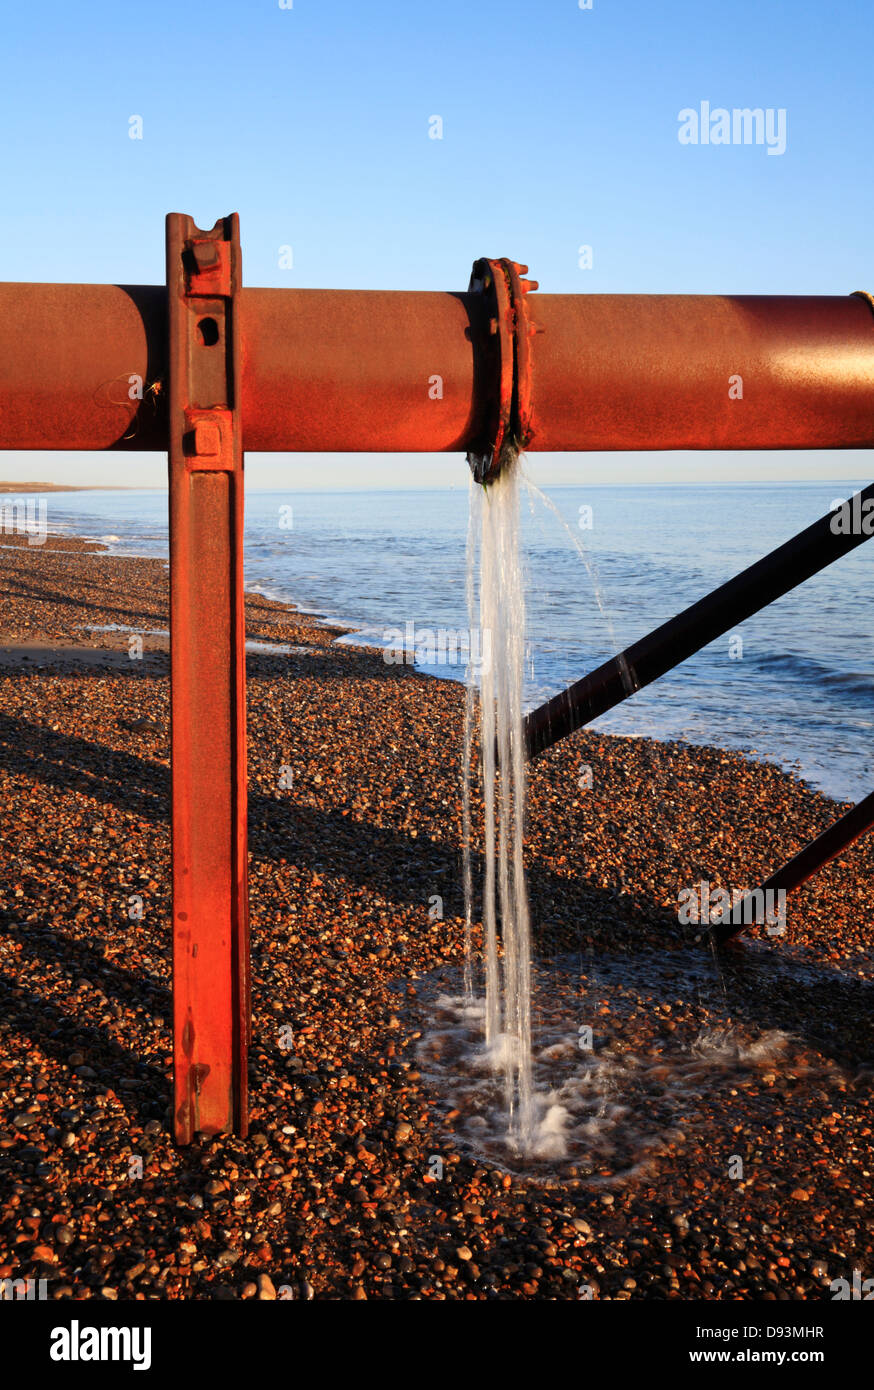 Vue d'une fuite sur une bride de tuyau d'exutoire transportant de l'eau de source de mer à Weybourne, Norfolk, Angleterre, Royaume-Uni. Banque D'Images